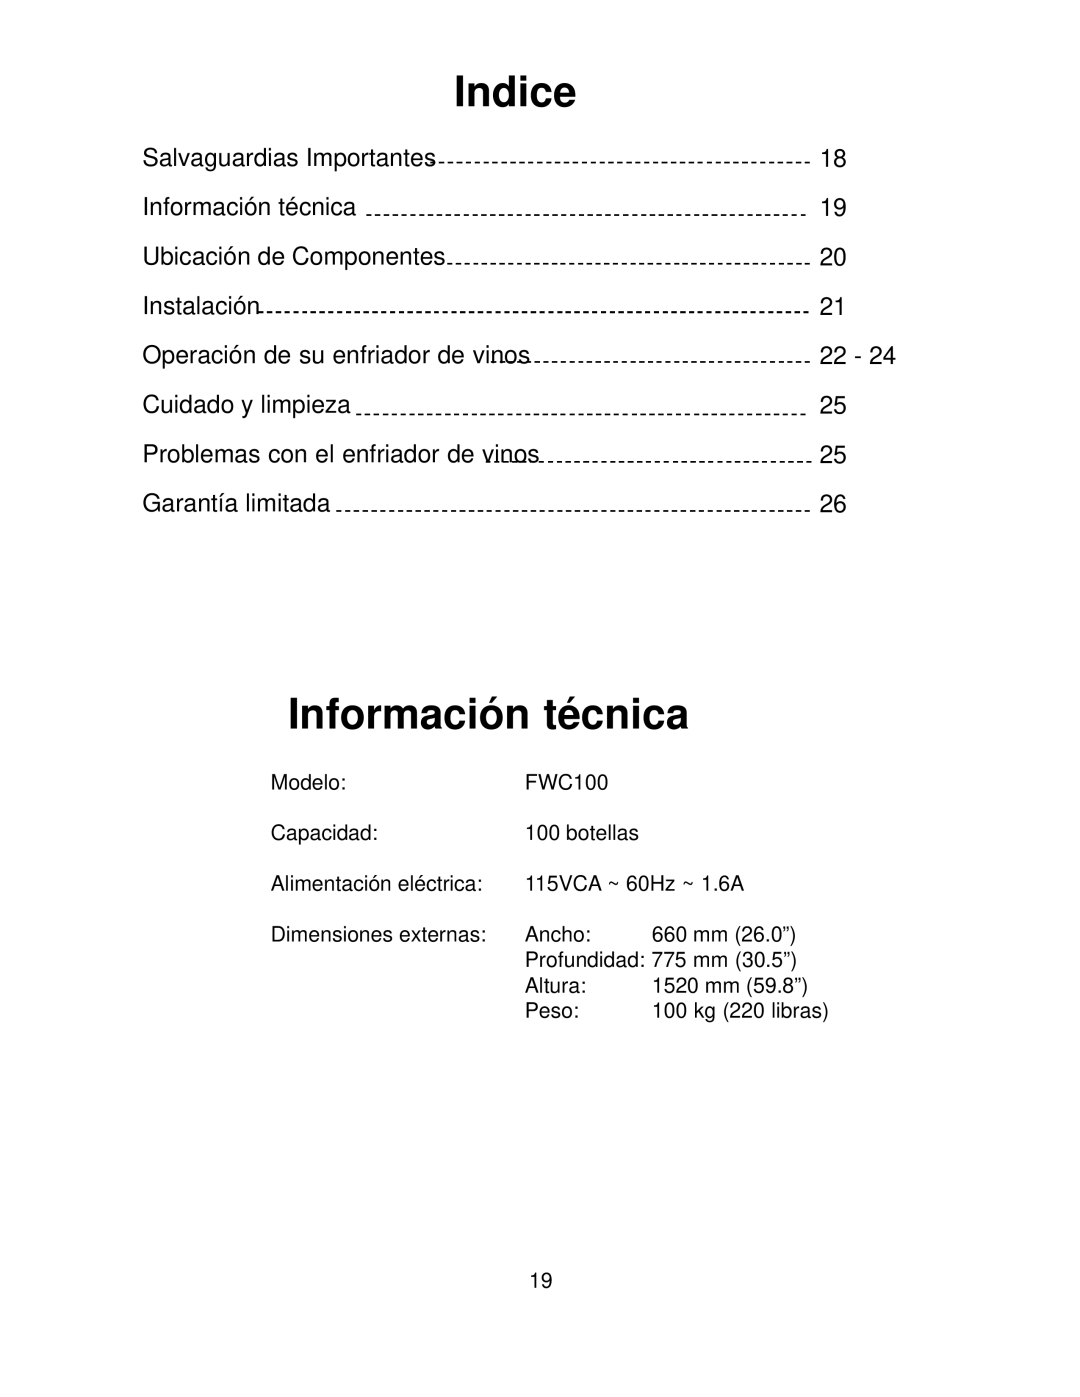 Franklin Industries, L.L.C FCW100 manual Indice, Información técnica 